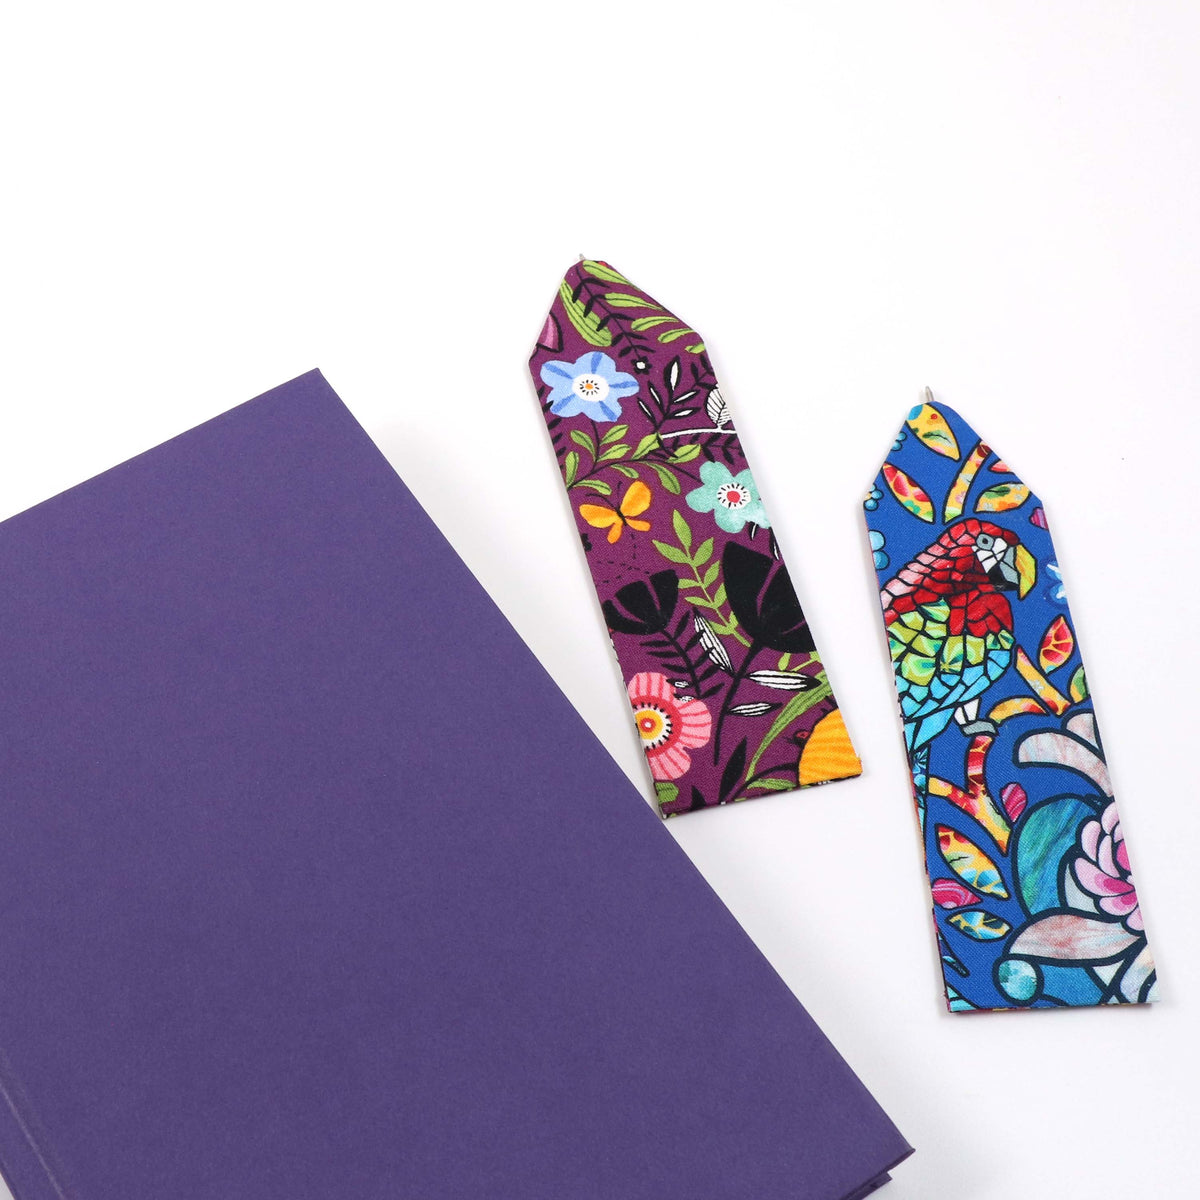 Pen bookmark DIY kit - pack of 5